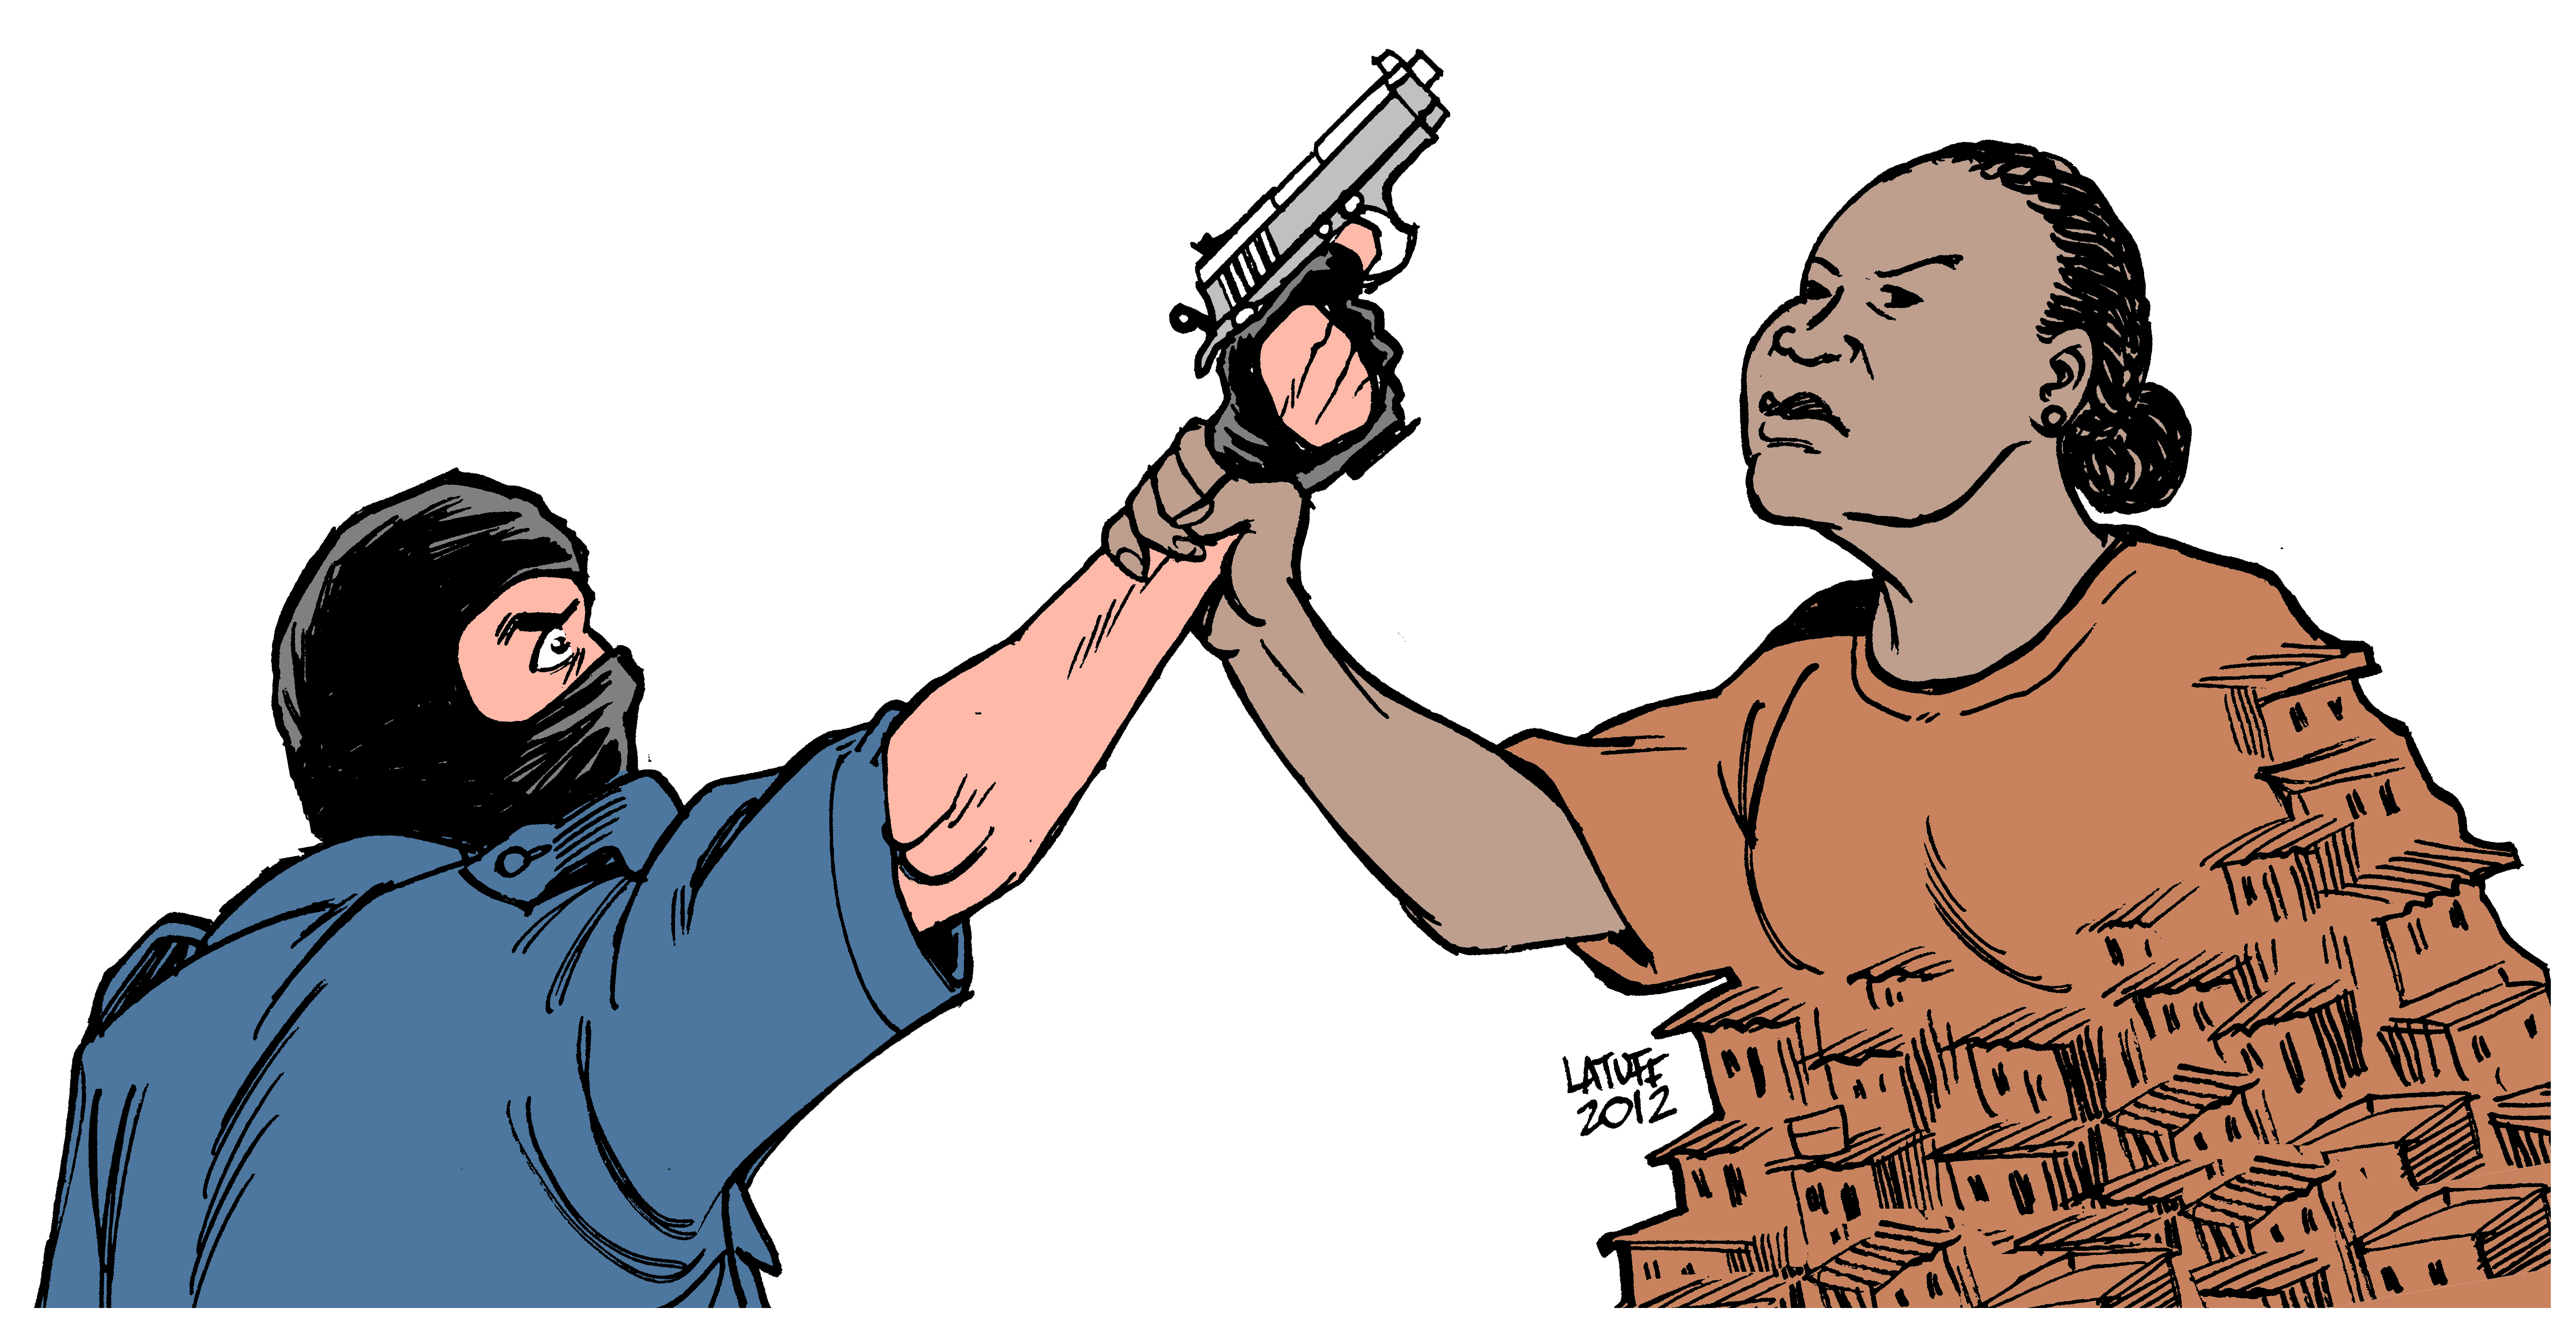 Por: Latuff